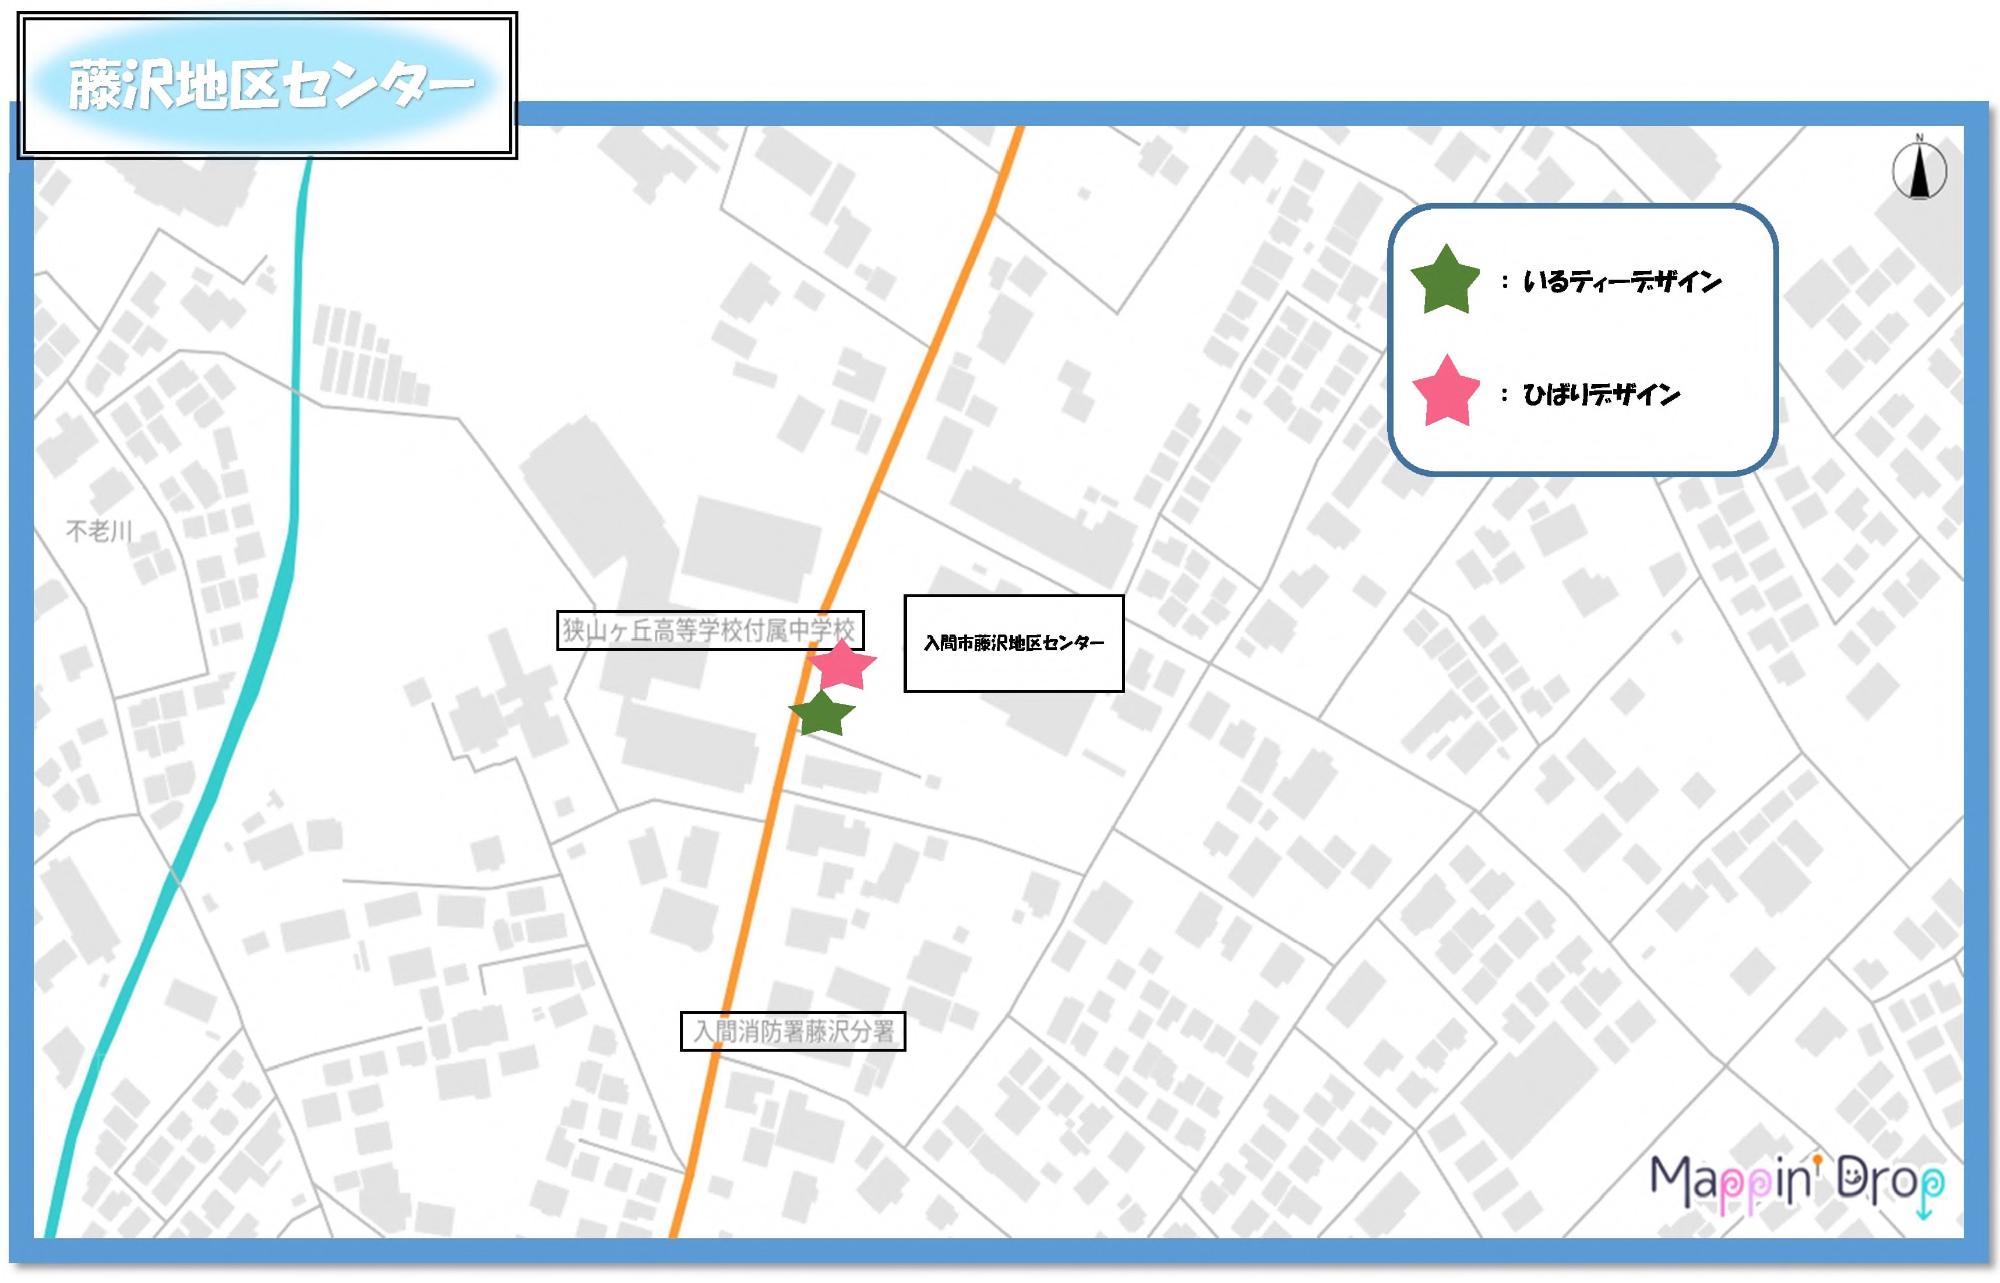 藤沢地区センター周辺にあるデザインマンホールふたの位置を示した設置マップ